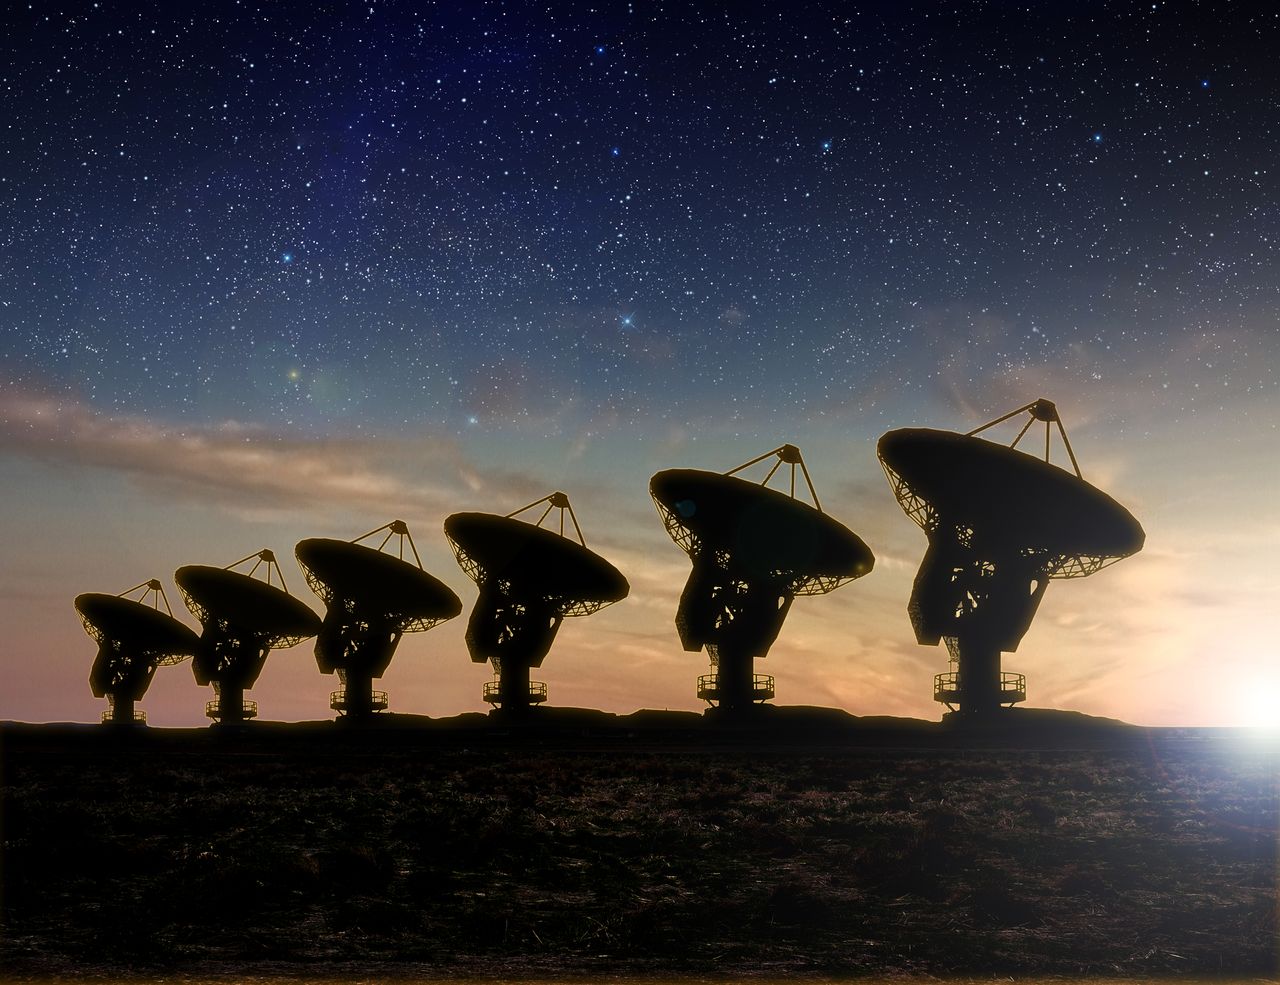 Radioteleskopy widok w nocy z depositphotos